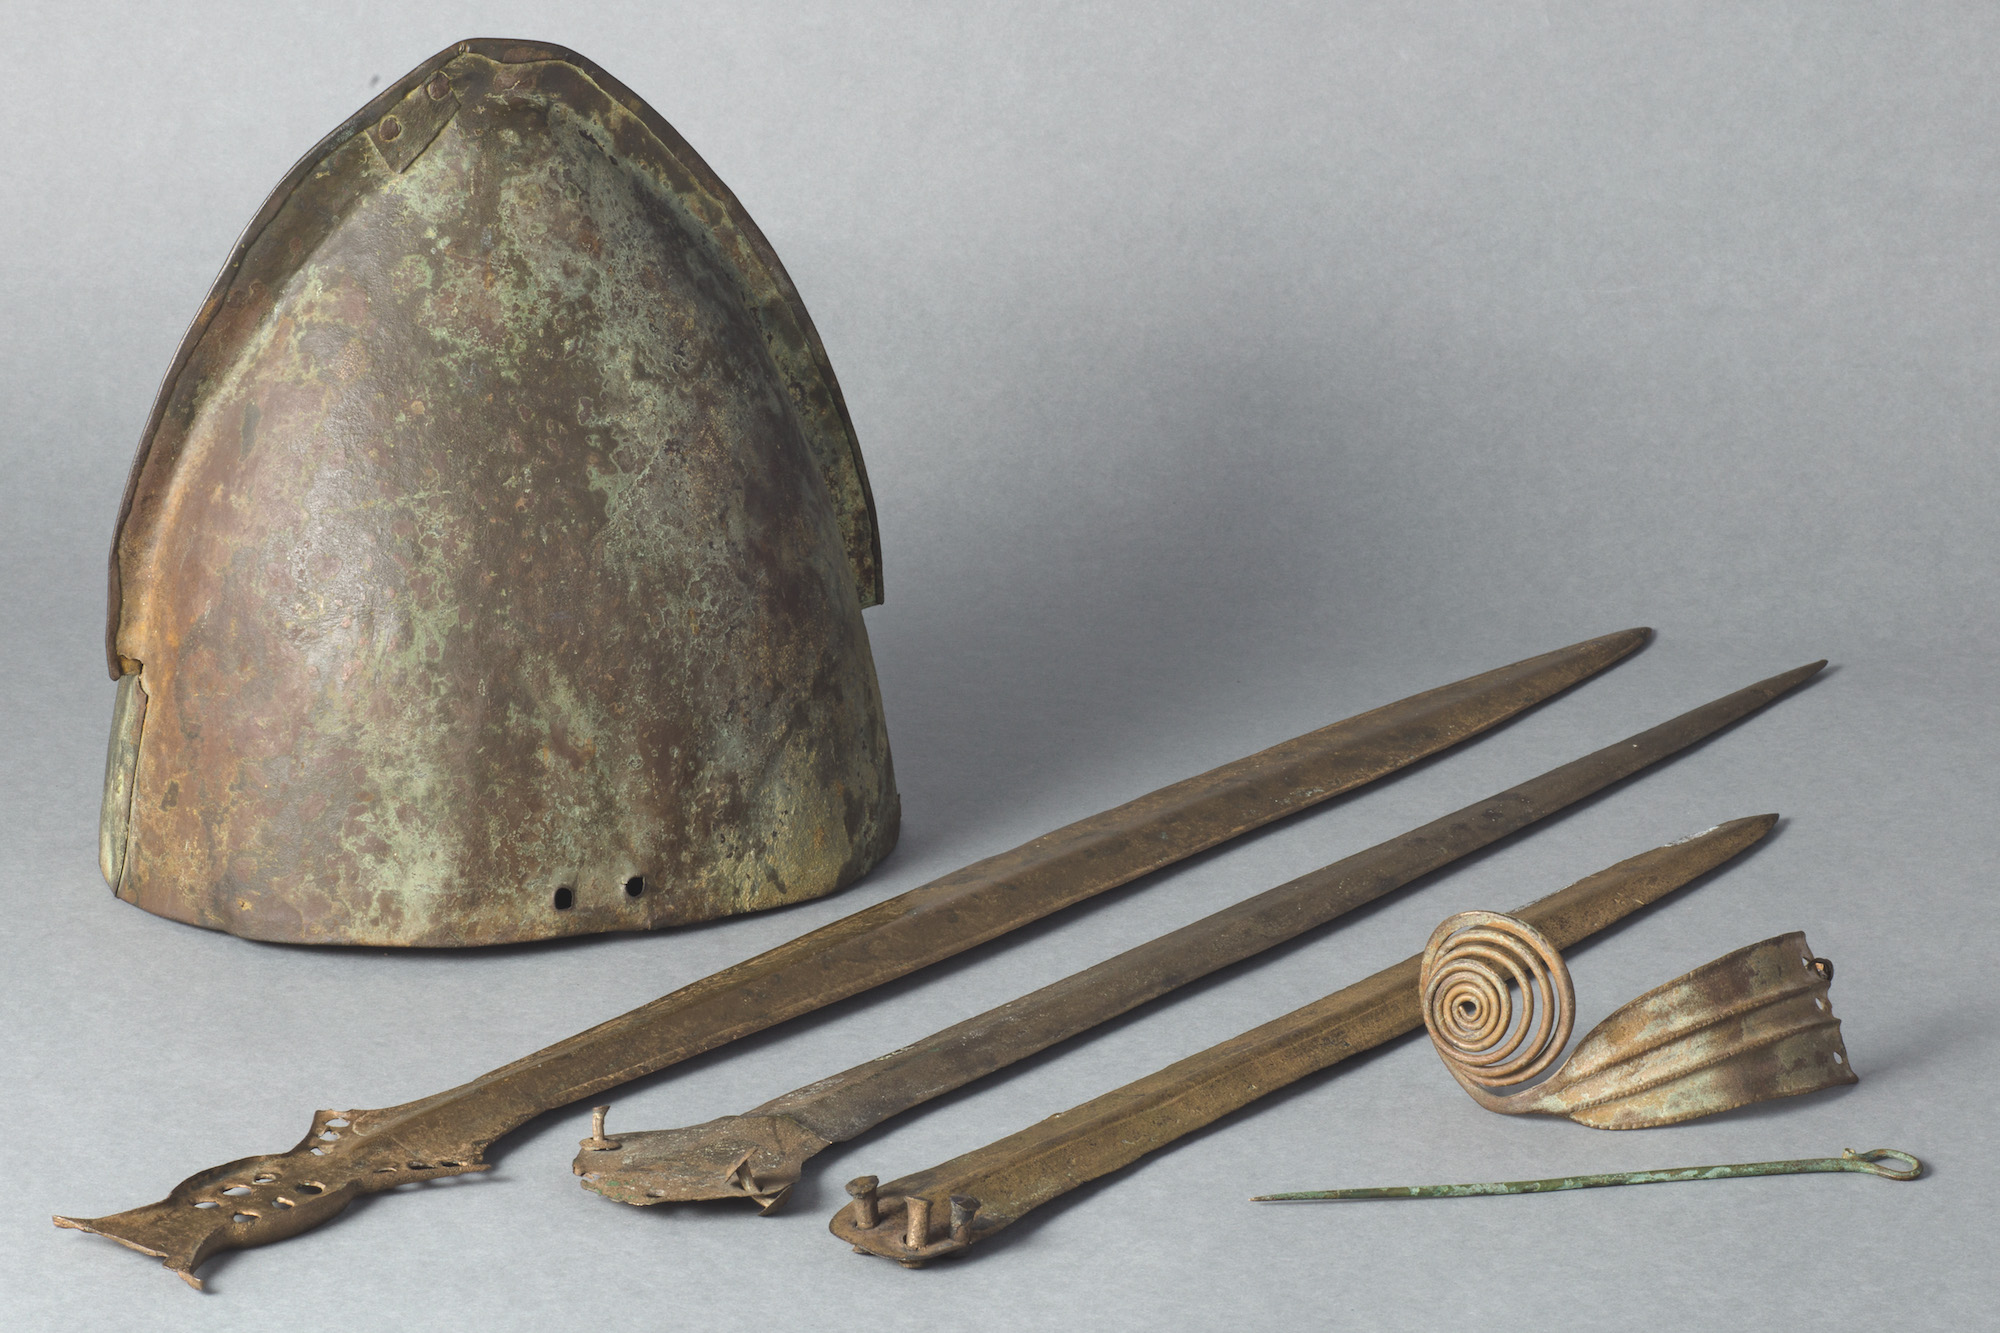 Ensemble d’objets prestigieux de l’âge du Bronze (casque, épées, parures) découverts dans la Saône au cours de dragages sur l’ancien passage à gué de Seurre. © Musée Vivant Denon, Chalon-sur-Saône, Jérôme Beg